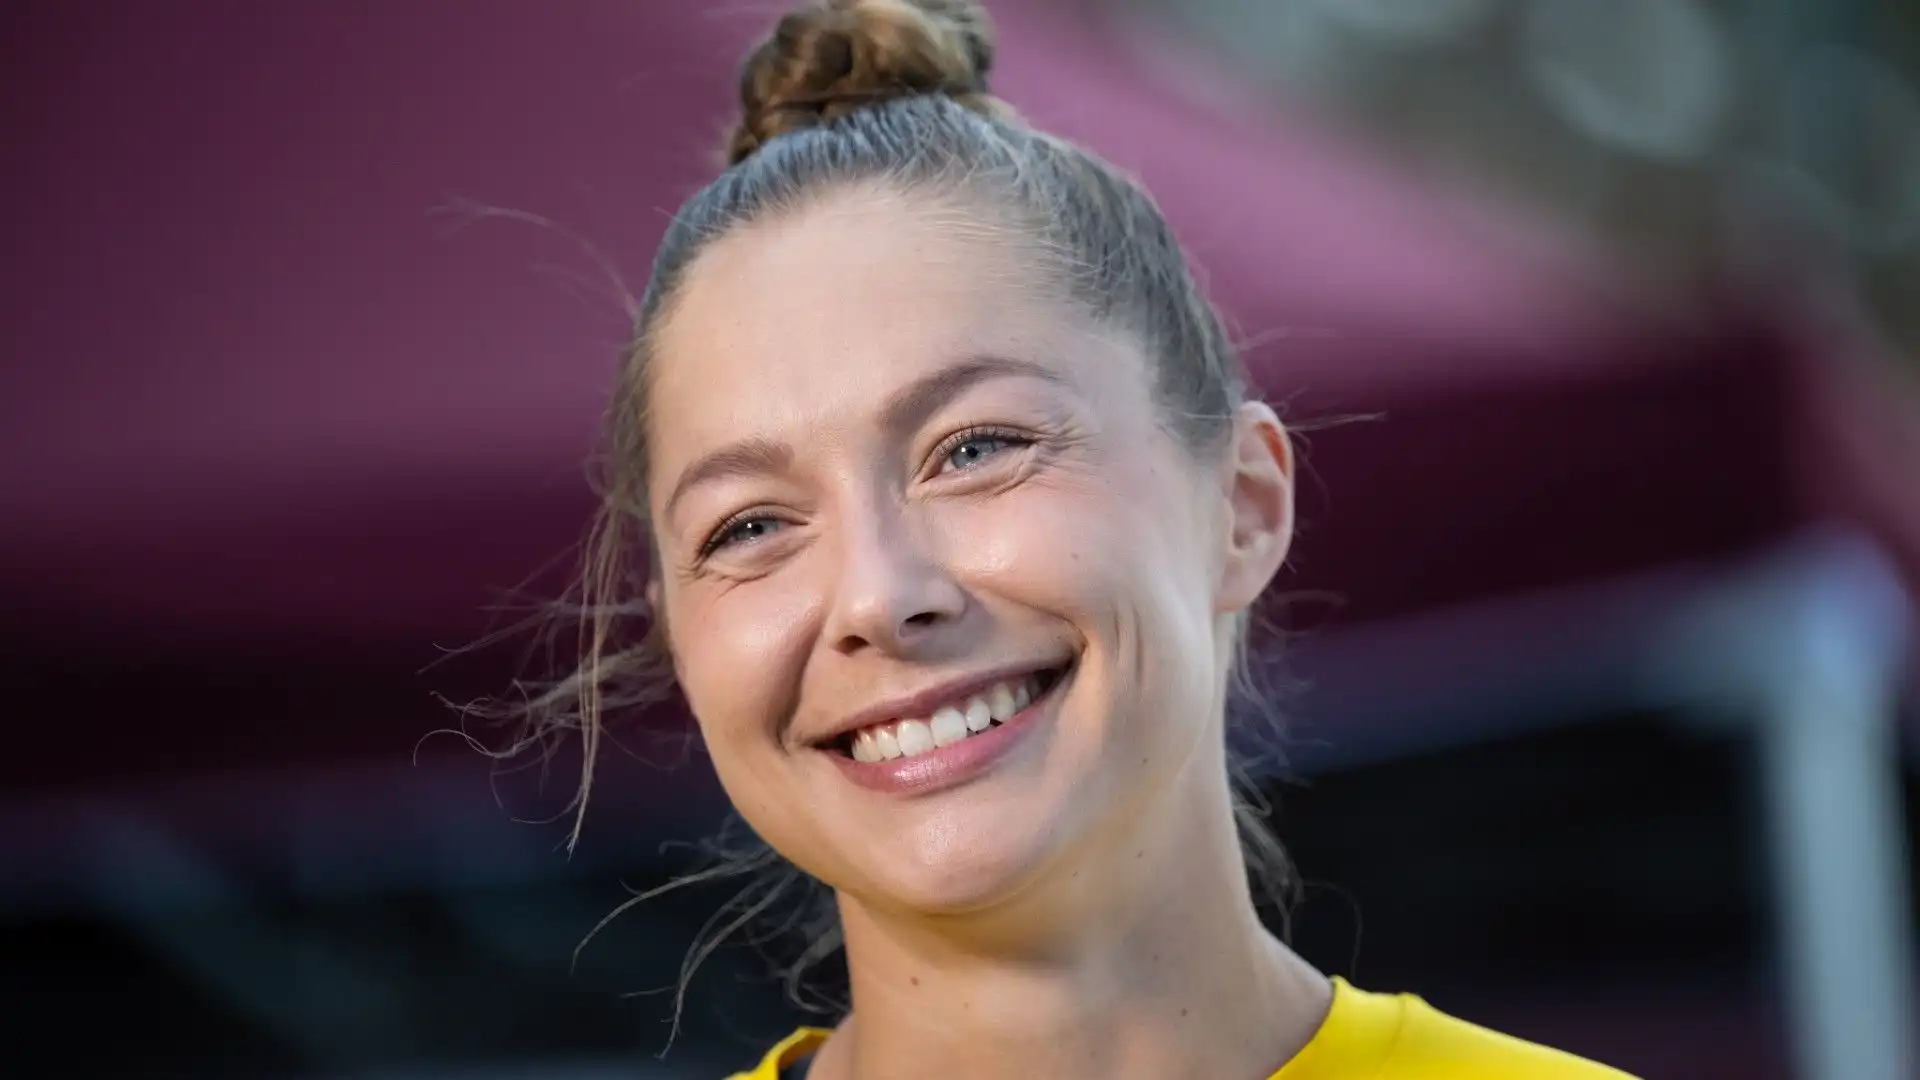 In carriera è stata campionessa nei 200 metri piani agli europei juniores di Eskilstuna 2015